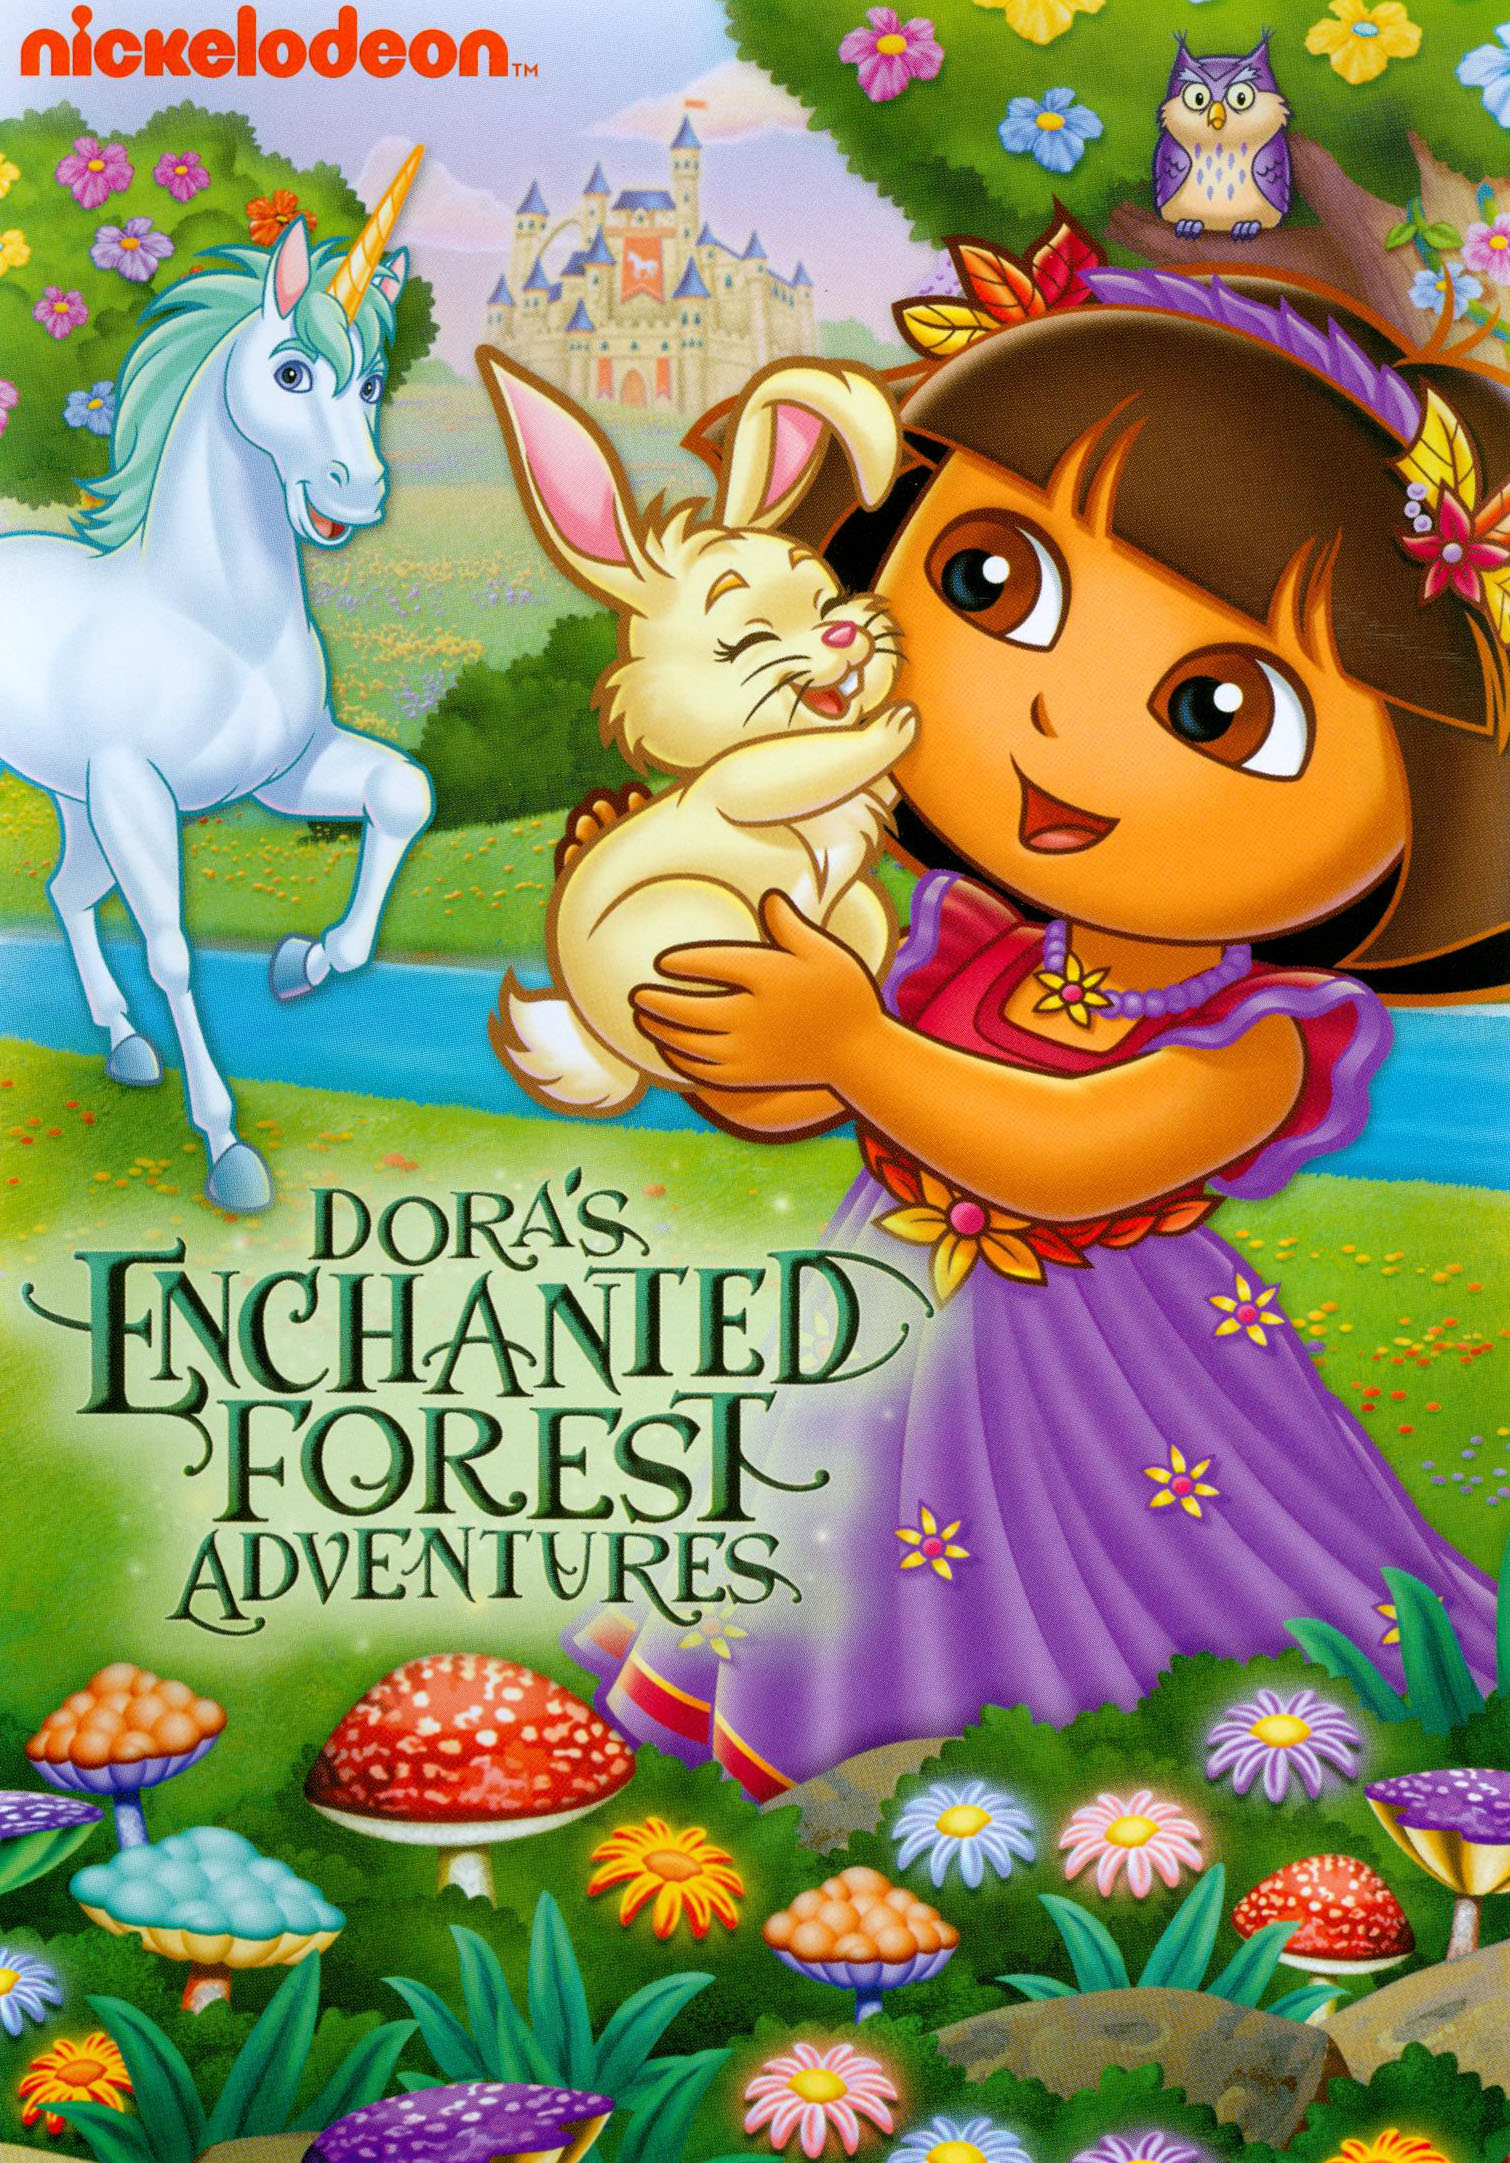 Dora The Explorer Dora S Enchanted Forest Adventures Dvd Best Buy - Vrogue